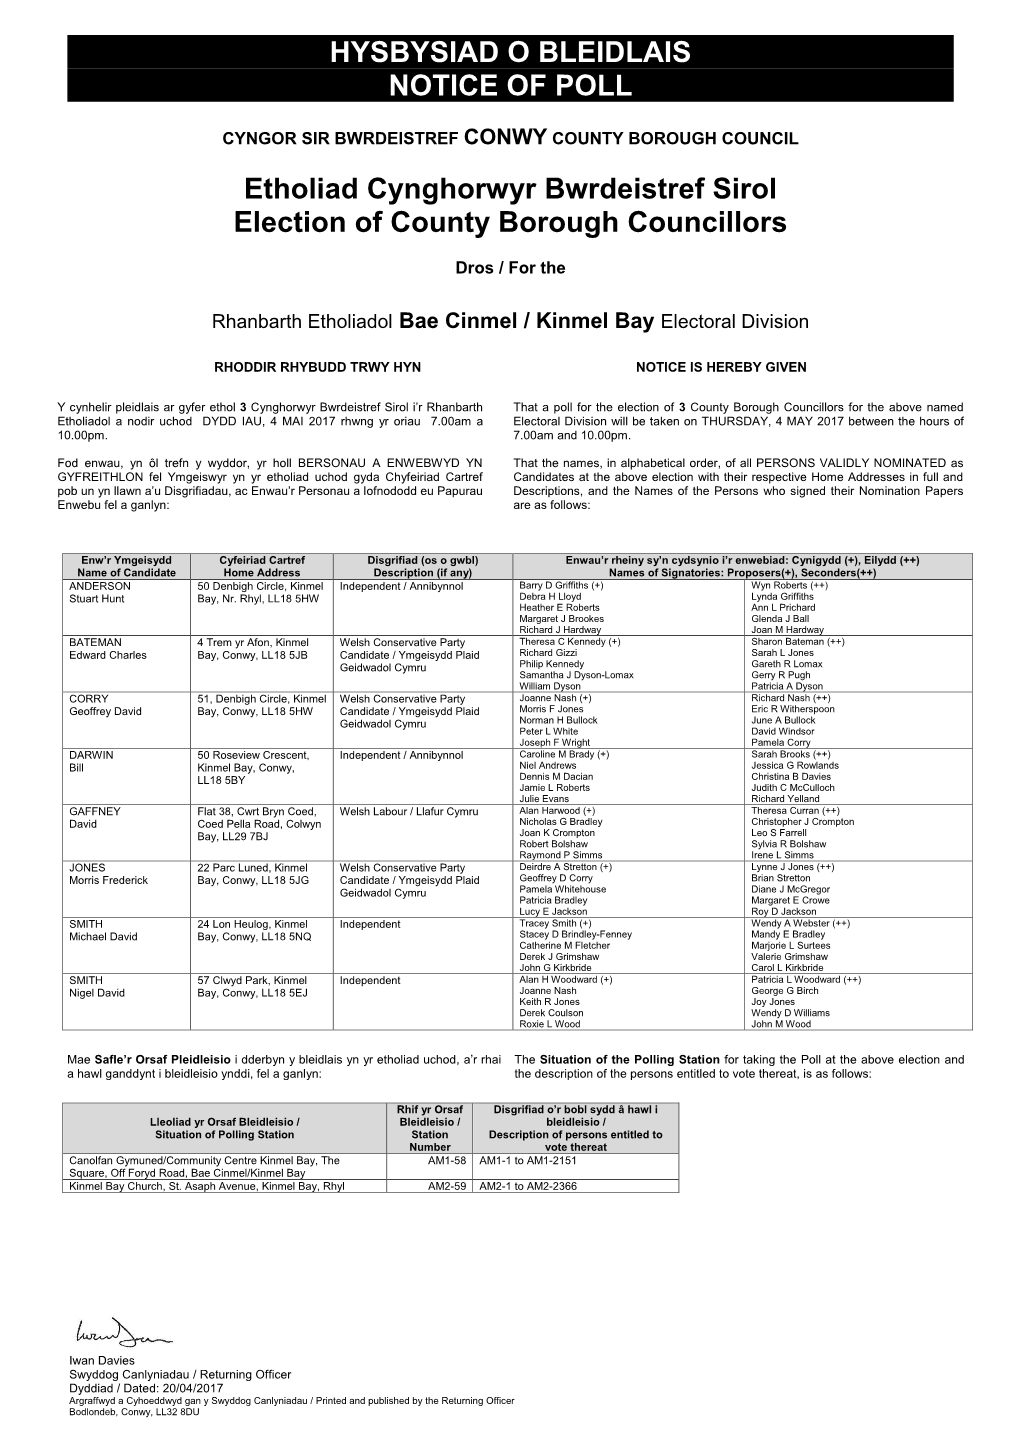 Kinmel Bay Electoral Division